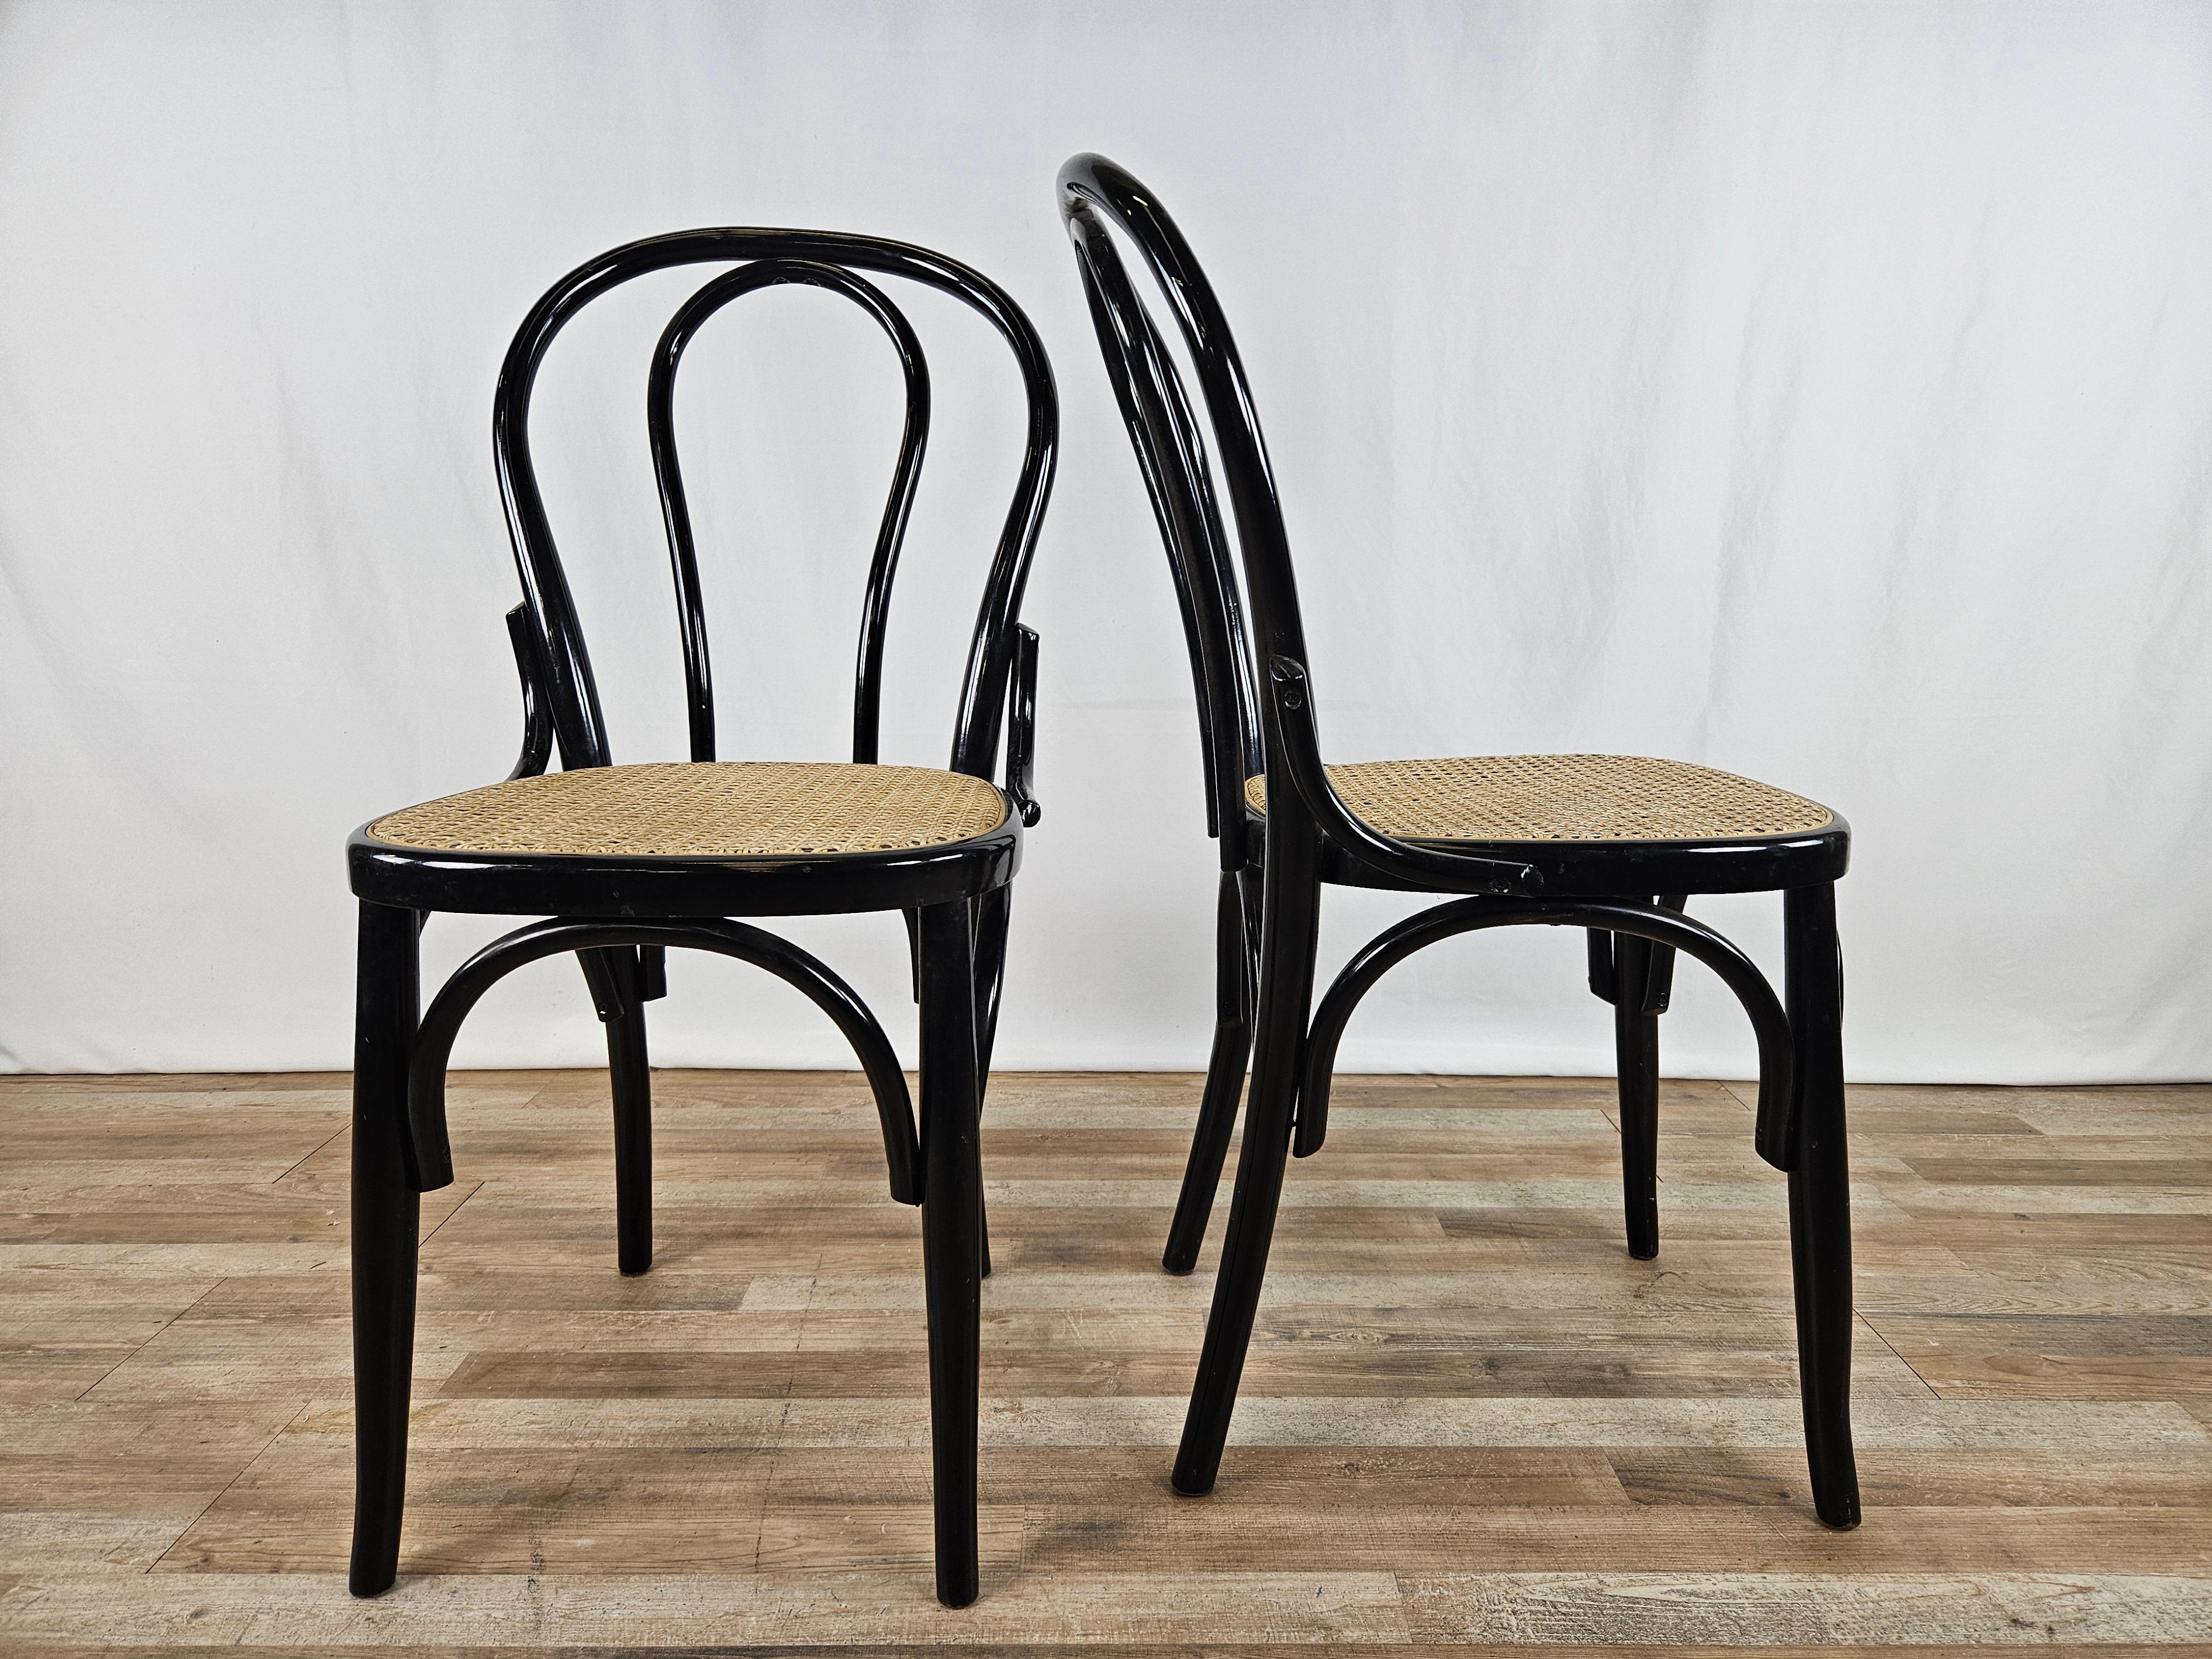 Paire de chaises en bois laqué noir avec assise en paille de Vienne et nœud décoratif entre le dossier et l'assise.

Idéal pour les cuisines, les bureaux, les salons ou comme éléments de mobilier.

Signes normaux dus à l'âge et à l'utilisation.